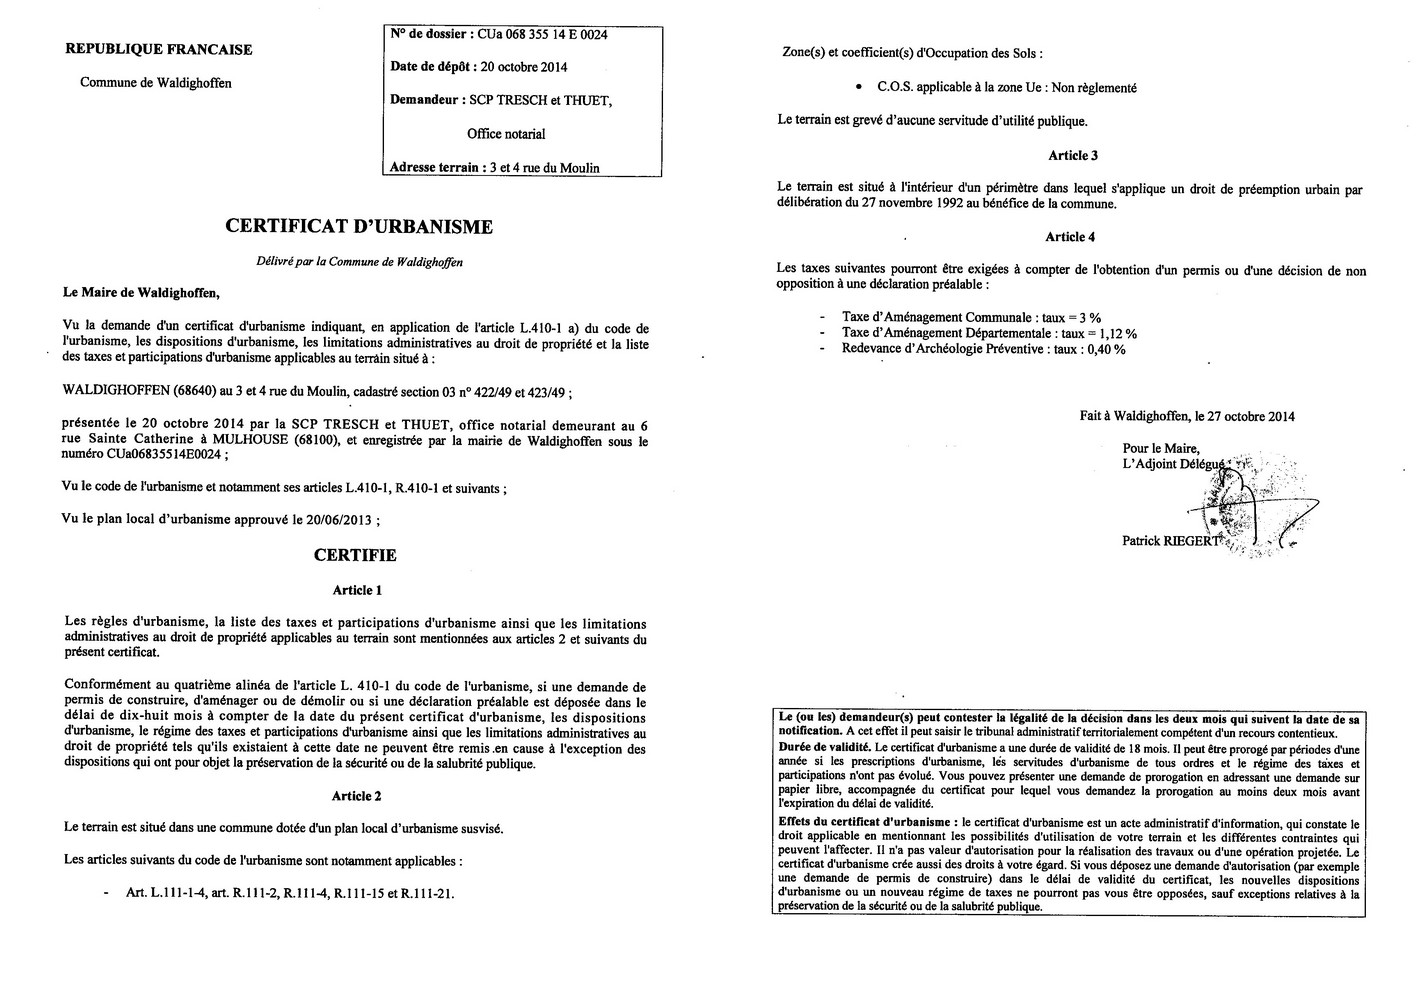 Certificat d'urbanisme délivré à la SCP TRESCH et THUET, office notarial